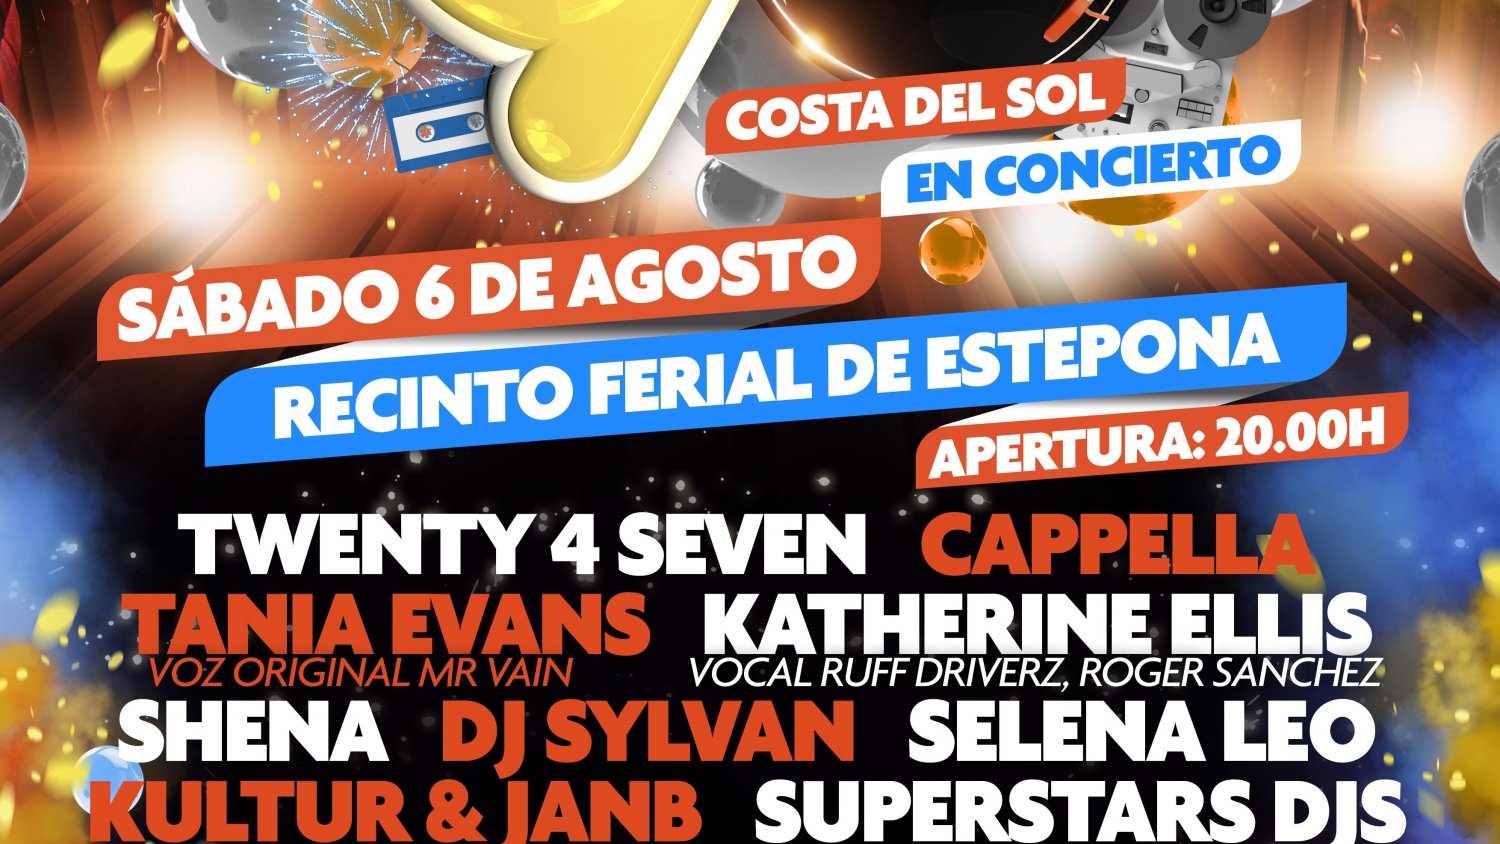 El Recinto Ferial de Estepona acoge un concierto con artistas de la música dance internacional de los años 90